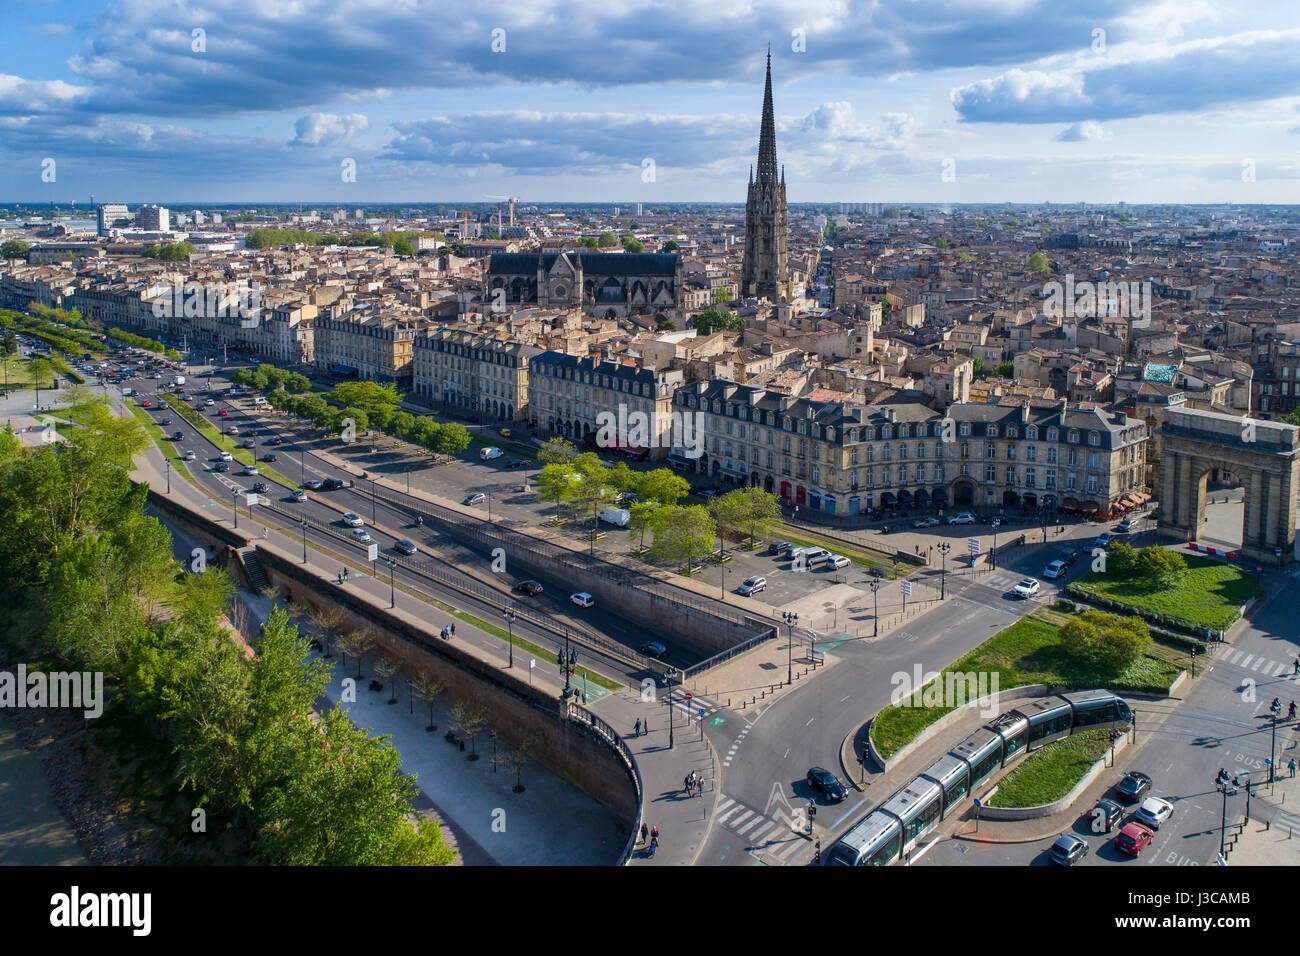 Frankreich, Gironde, Bordeaux, Gebiet von der UNESCO als Weltkulturerbe gelistet Steinbrücke über die Garonne Fluß, Ziegel und Stein Bogenbrücke 18 eingeweiht Stockfoto